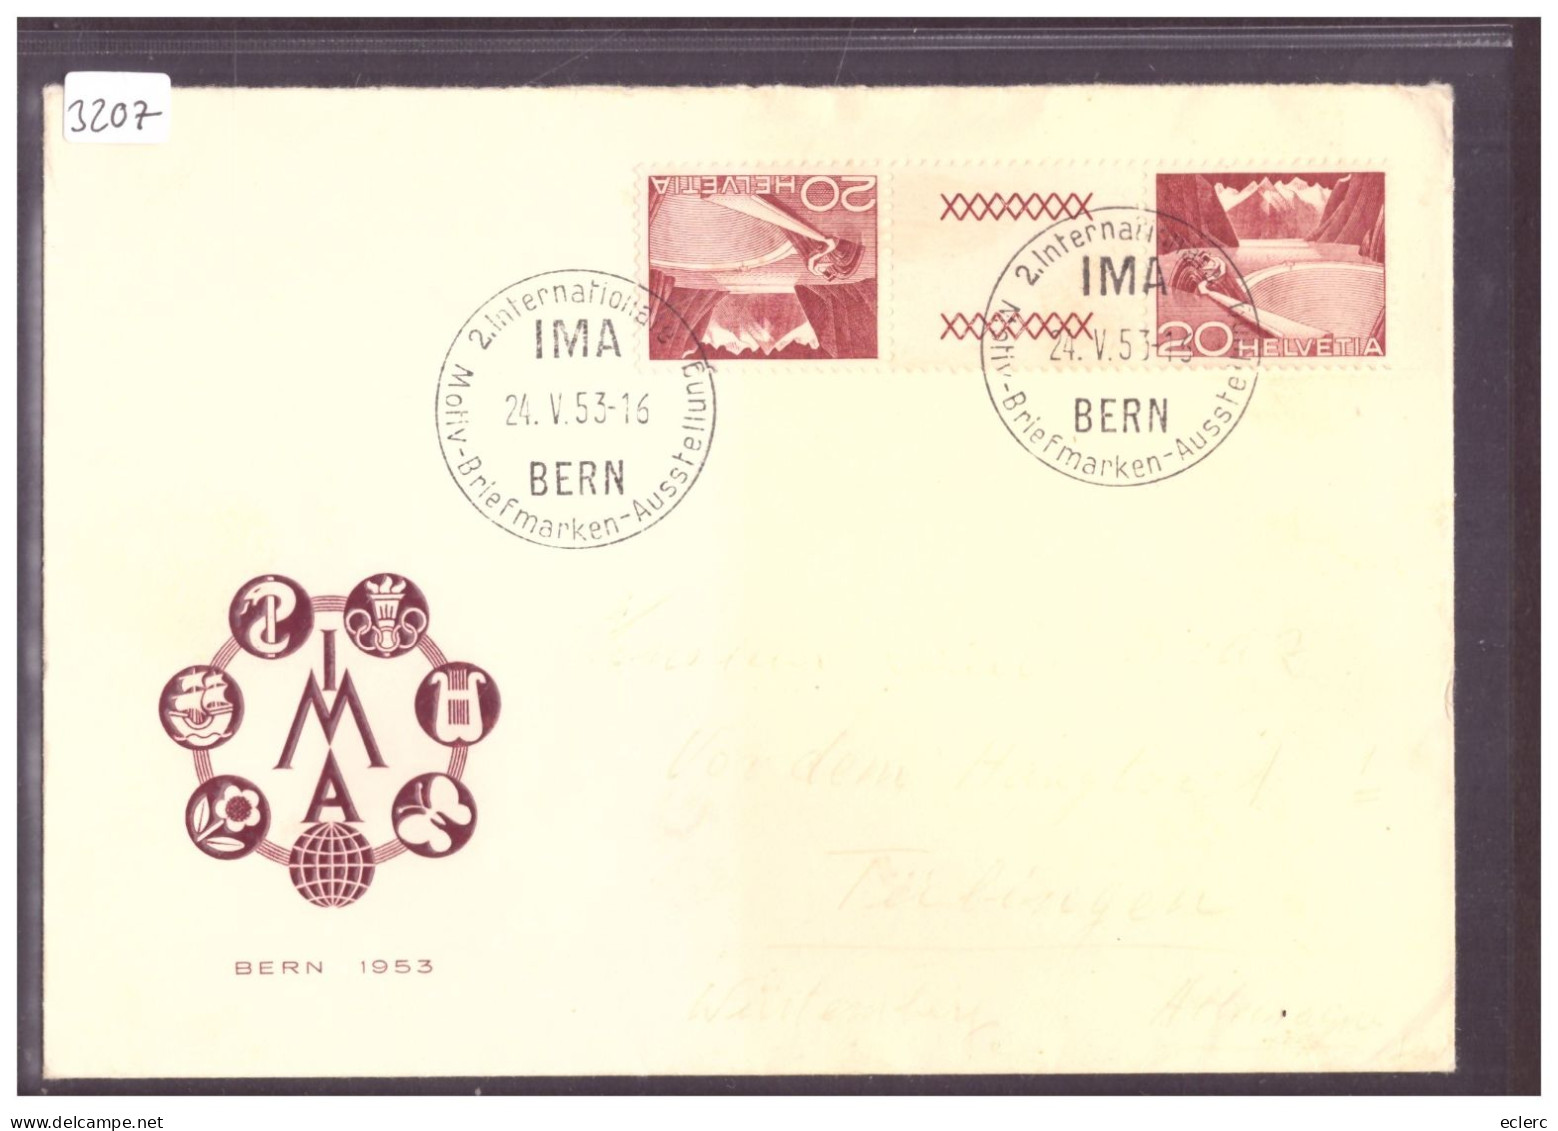 IMA BERN 1953 - MOTIV BRIEFMARKEN AUSSTELLUNG - Cartas & Documentos